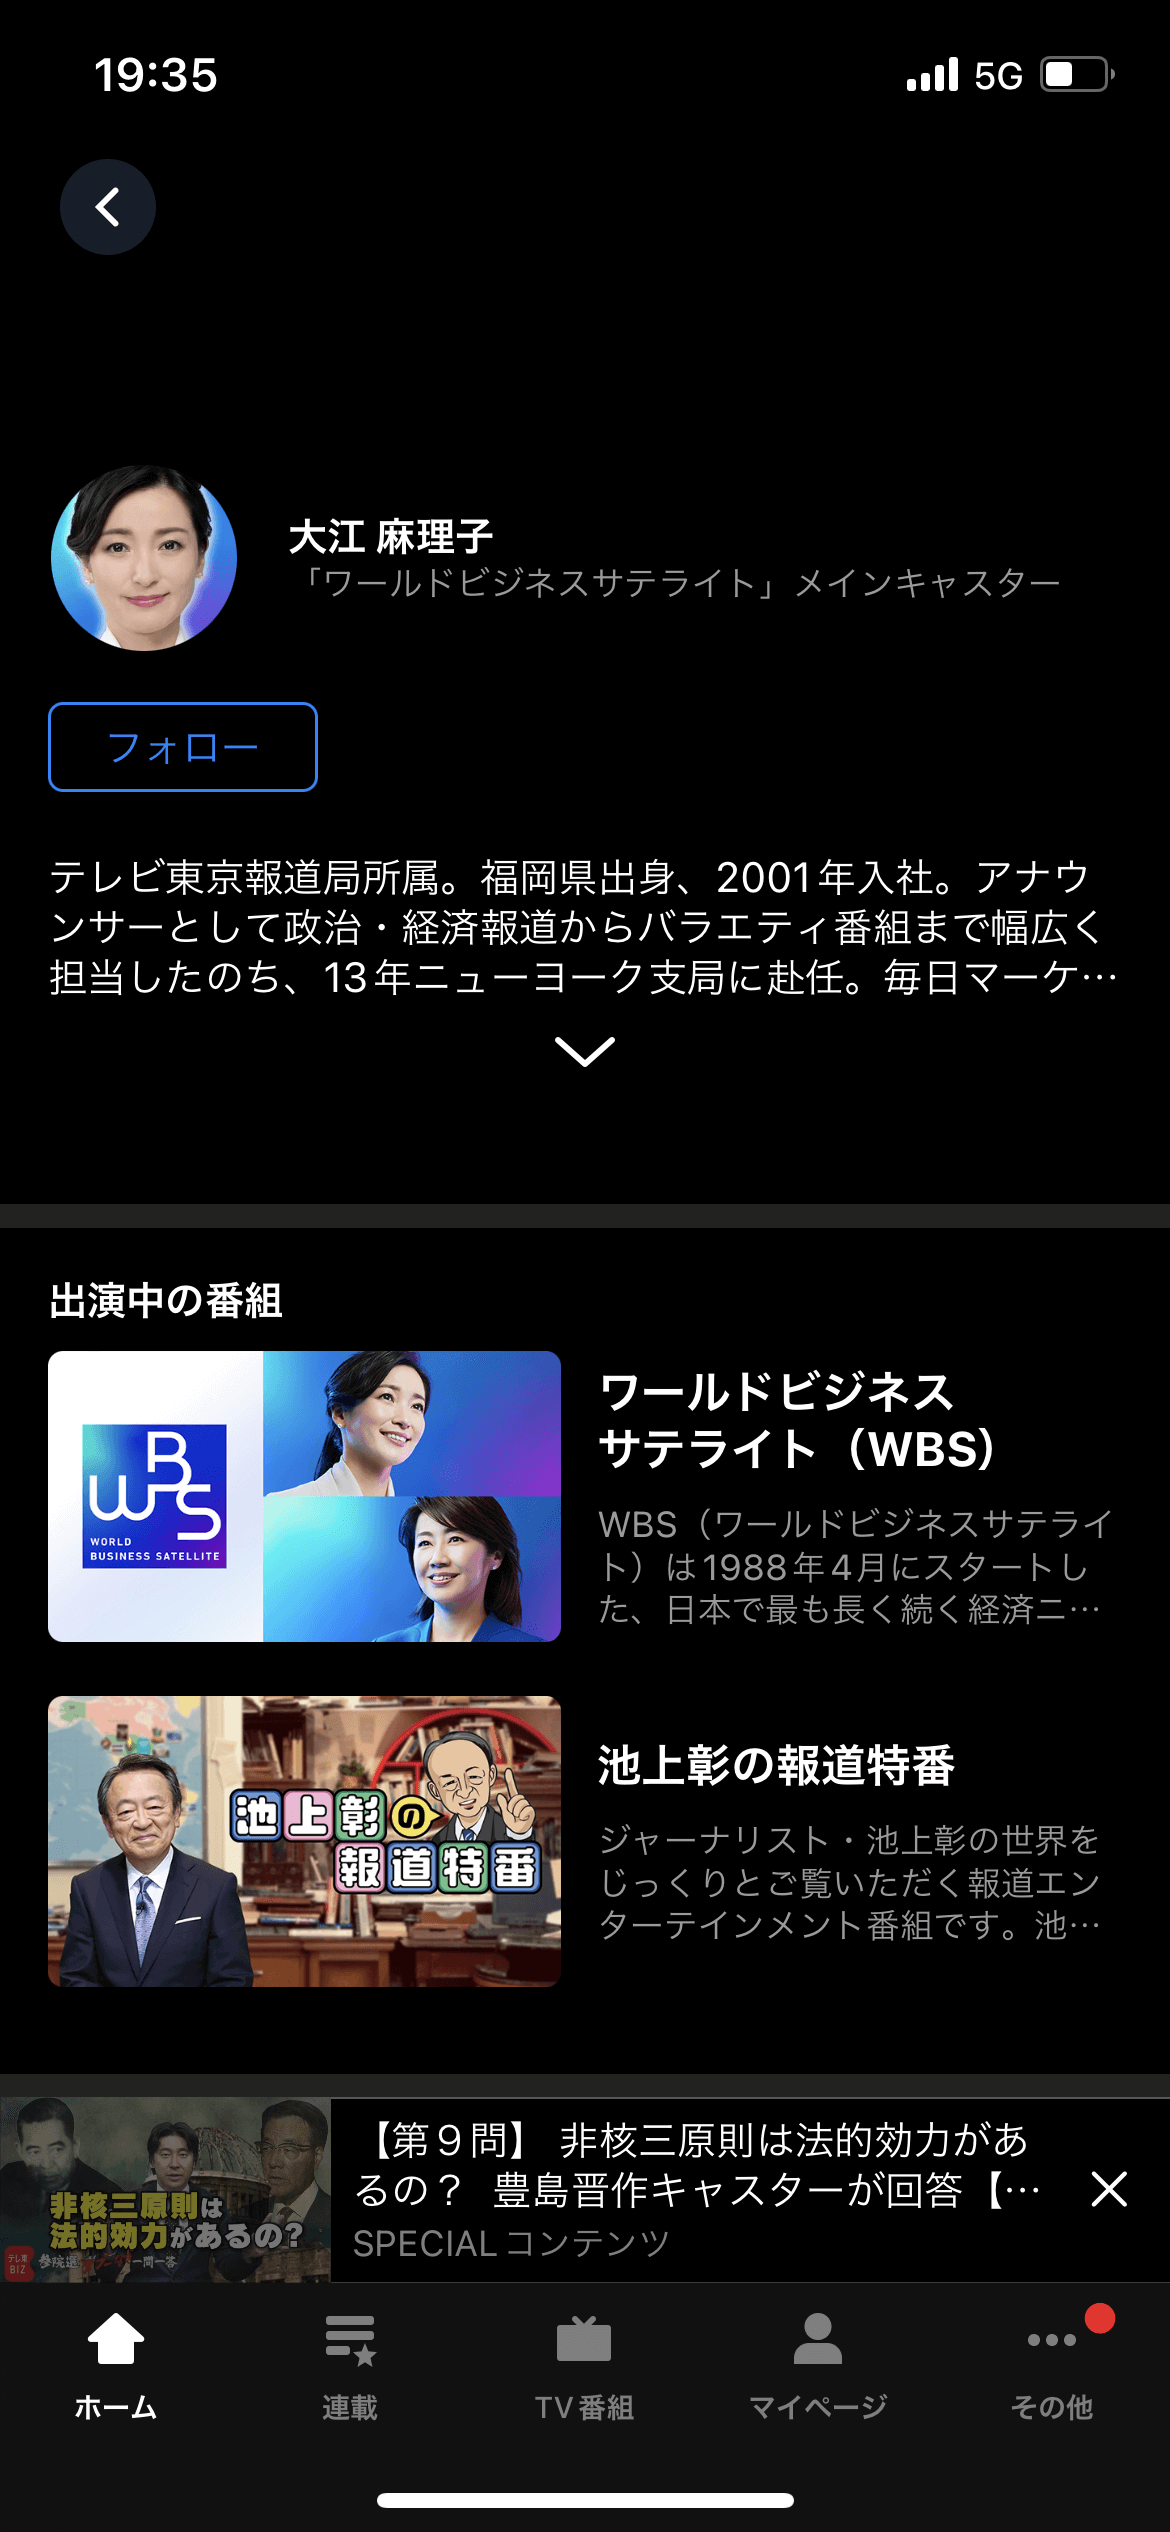 テレ東BIZ ホーム screen